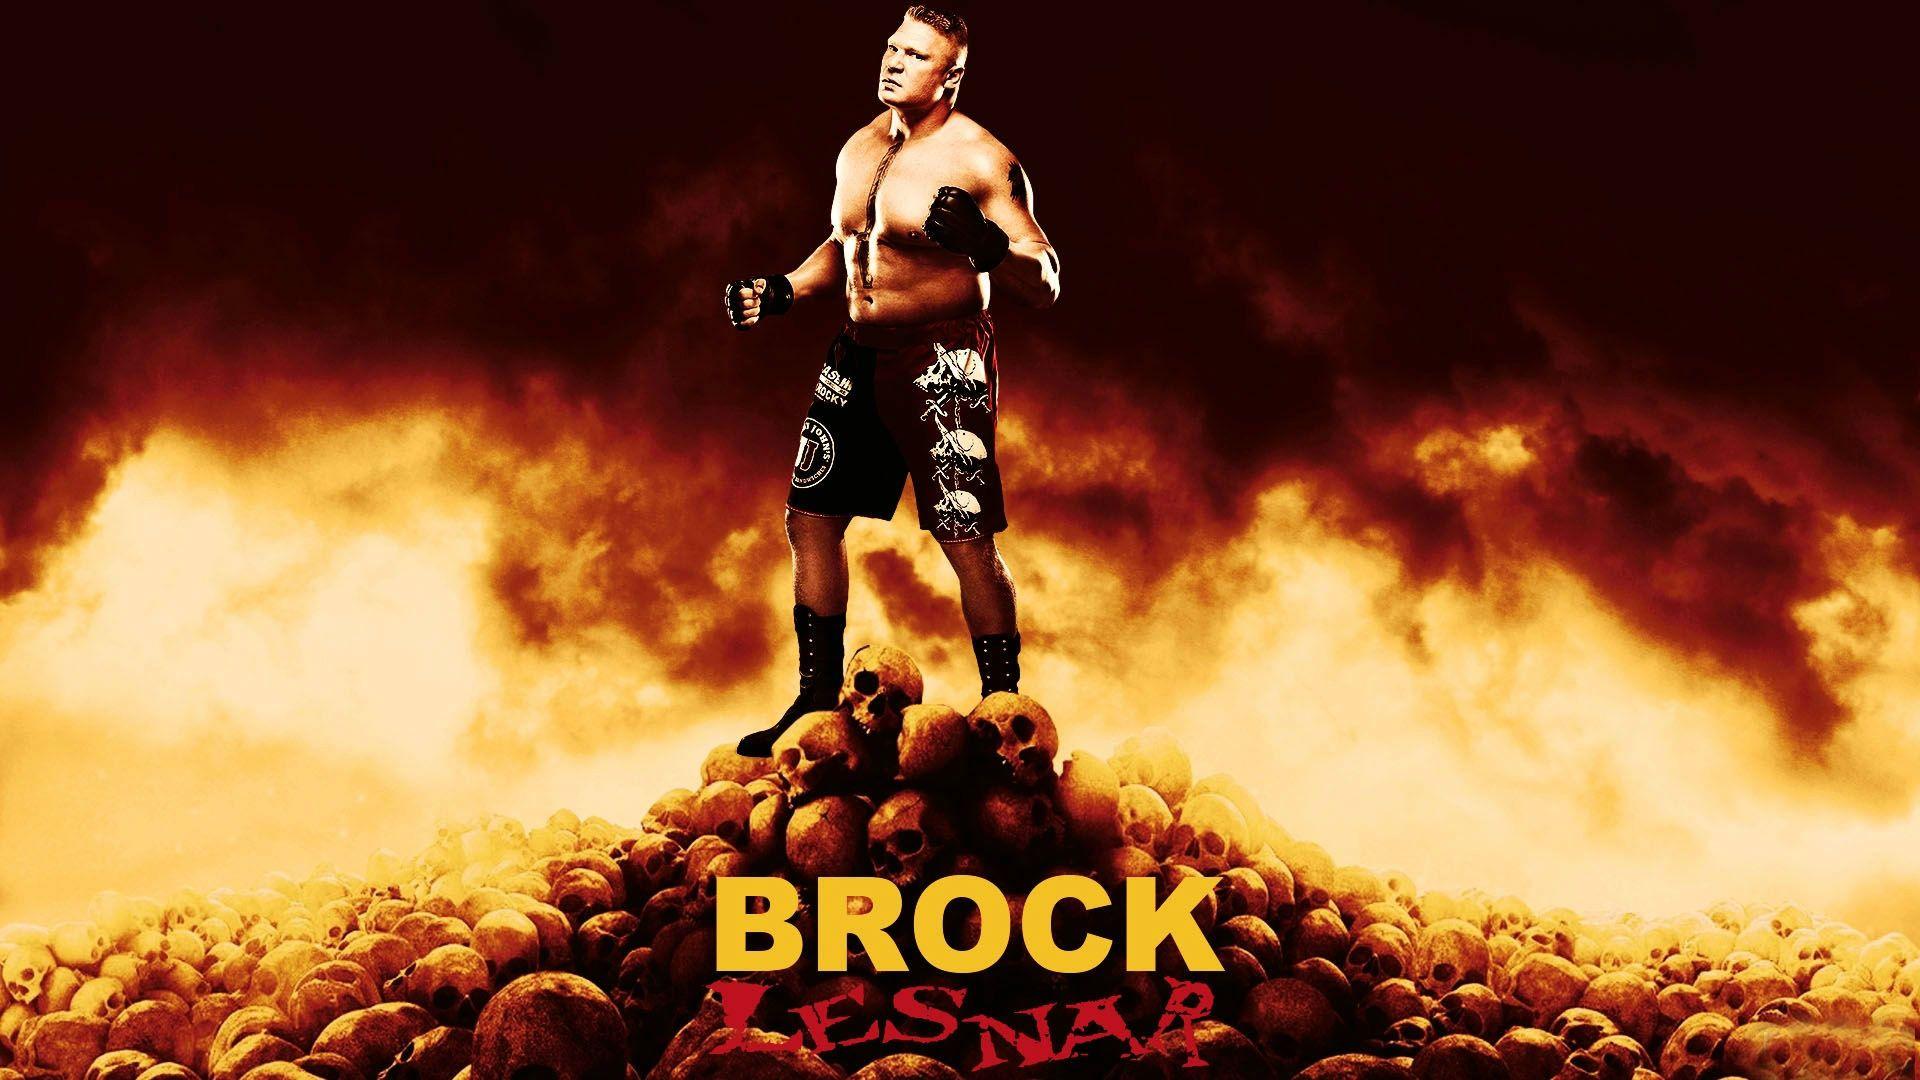 Brock Lesnar Hd Background. Brock Lesnar HD Background